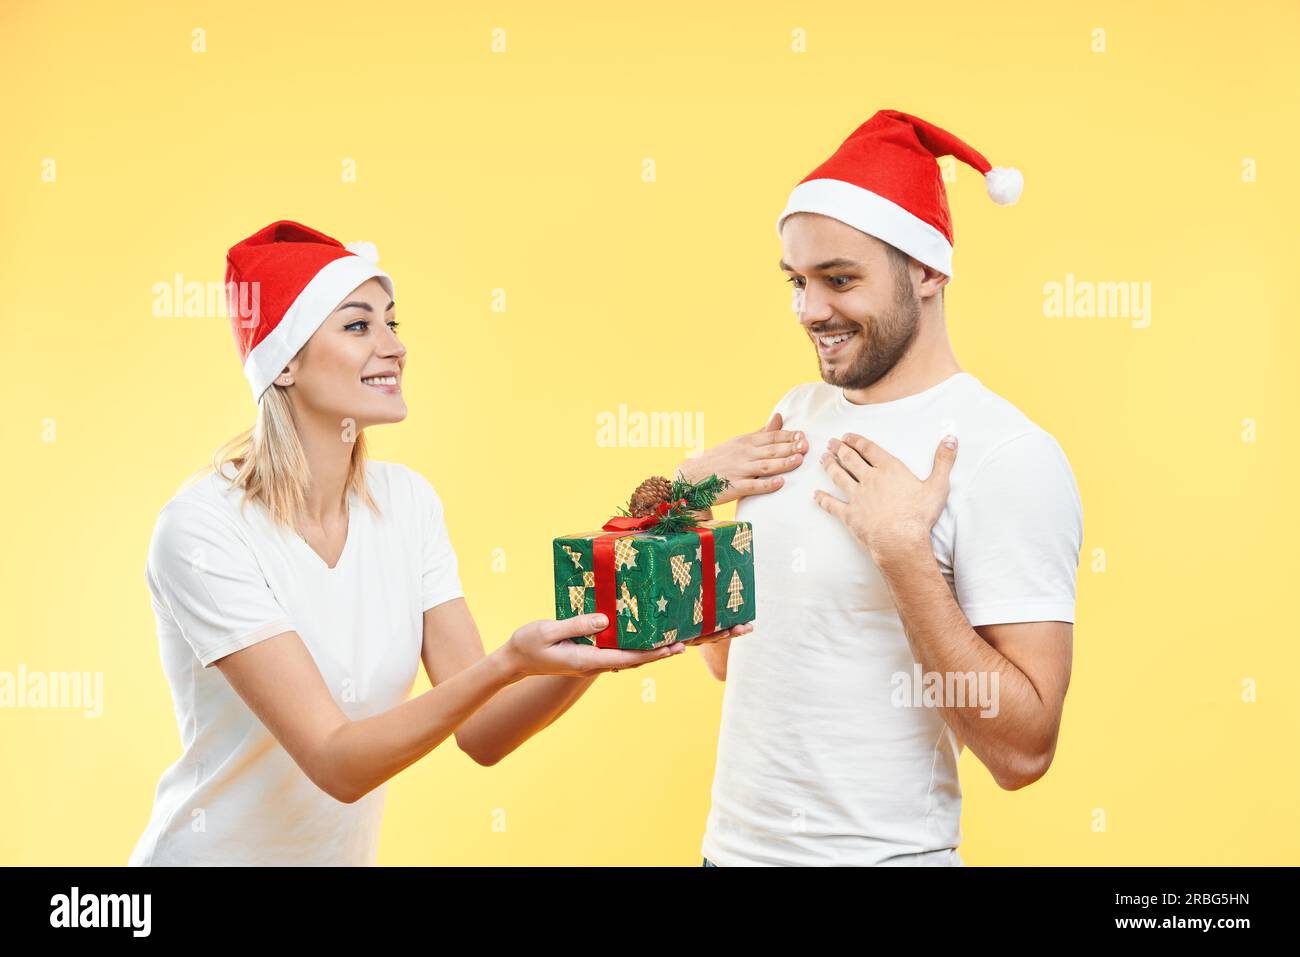 Giovane donna dare scatola regalo di natale a uomo isolato su sfondo giallo. Presente, vacanza, celebrazione concetto Foto Stock